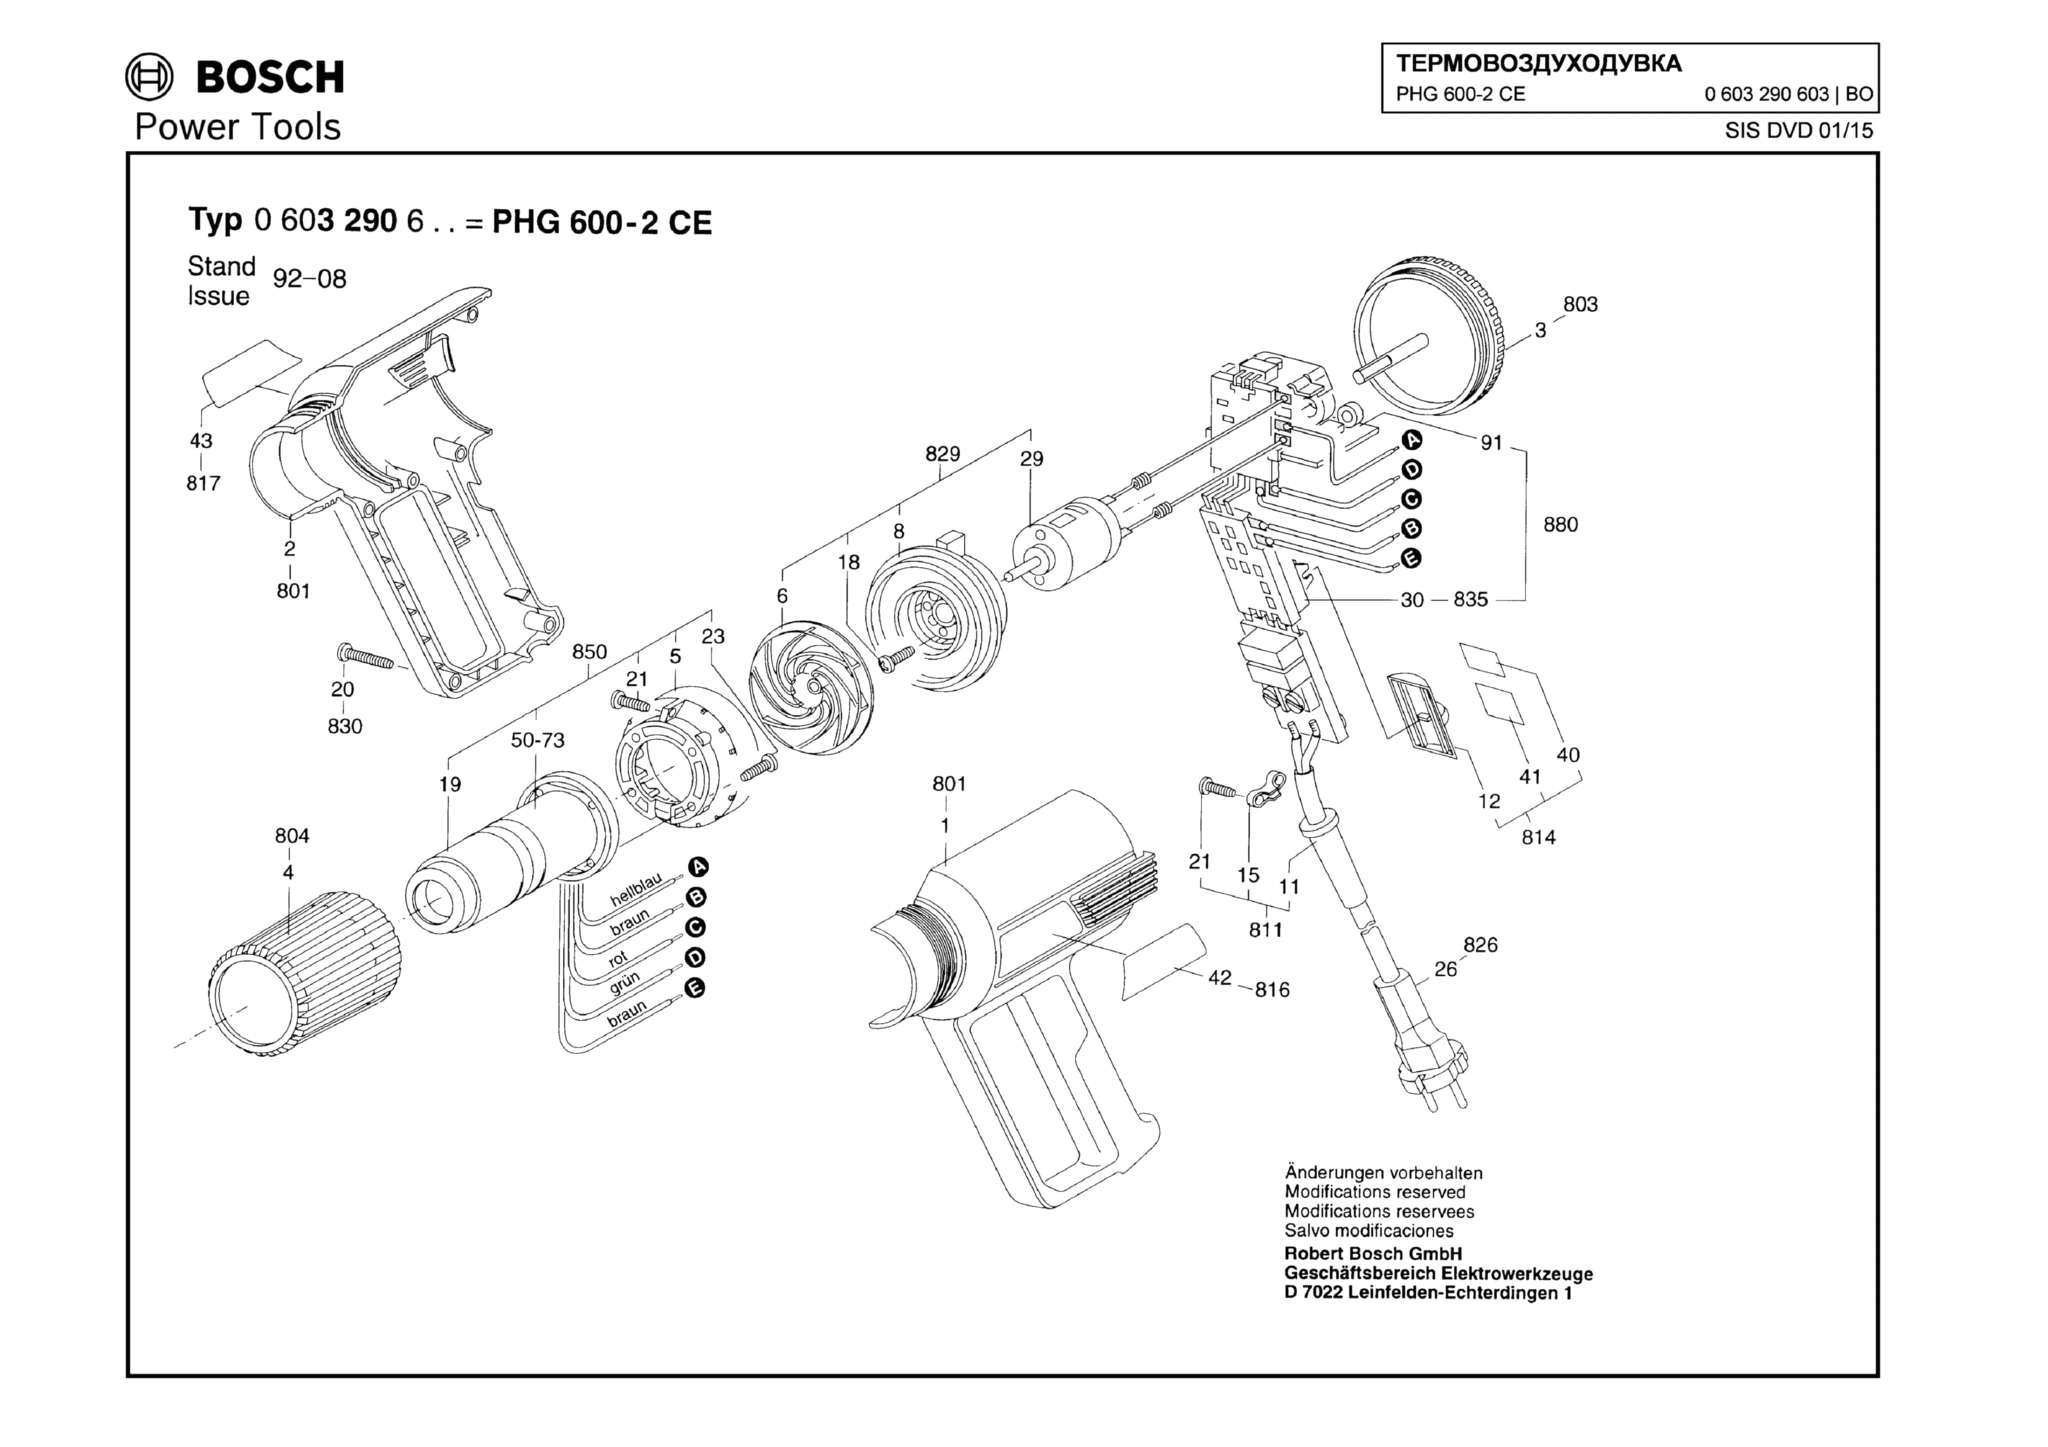 Запчасти, схема и деталировка Bosch PHG 600-2 CE (ТИП 0603290603)